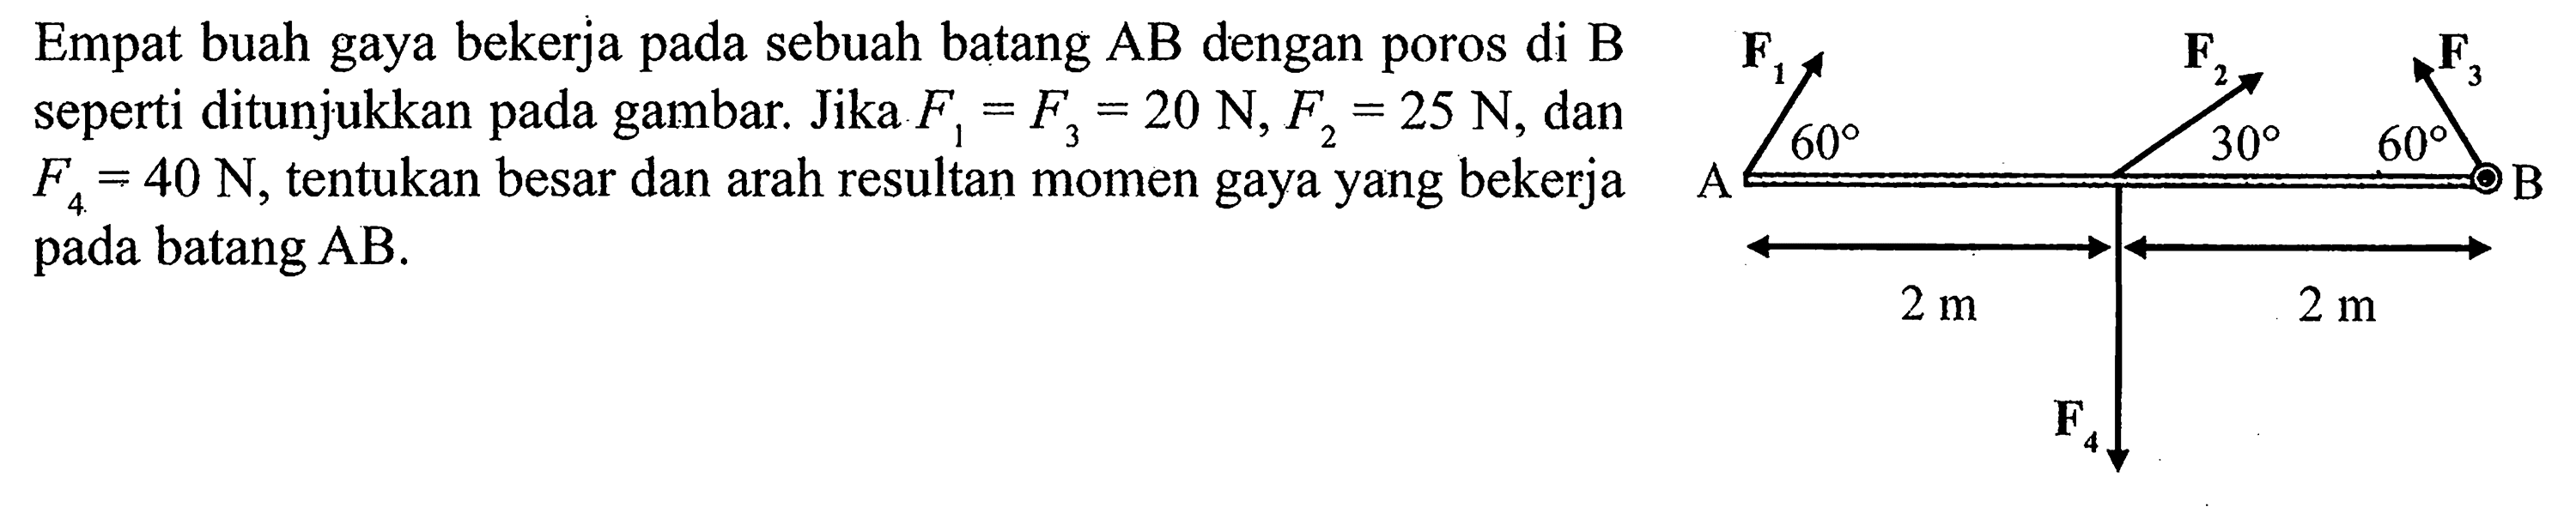 Empat buah gaya bekerja sebuah batang AB dengan poros di B seperti ditunjukkan gambar Jika F1 = F3 = 20 N, F2 = 25 N, dan F4 = 40 N, tentukan besar dan arah resultan momen gaya yang bekerja B pada batang AB.